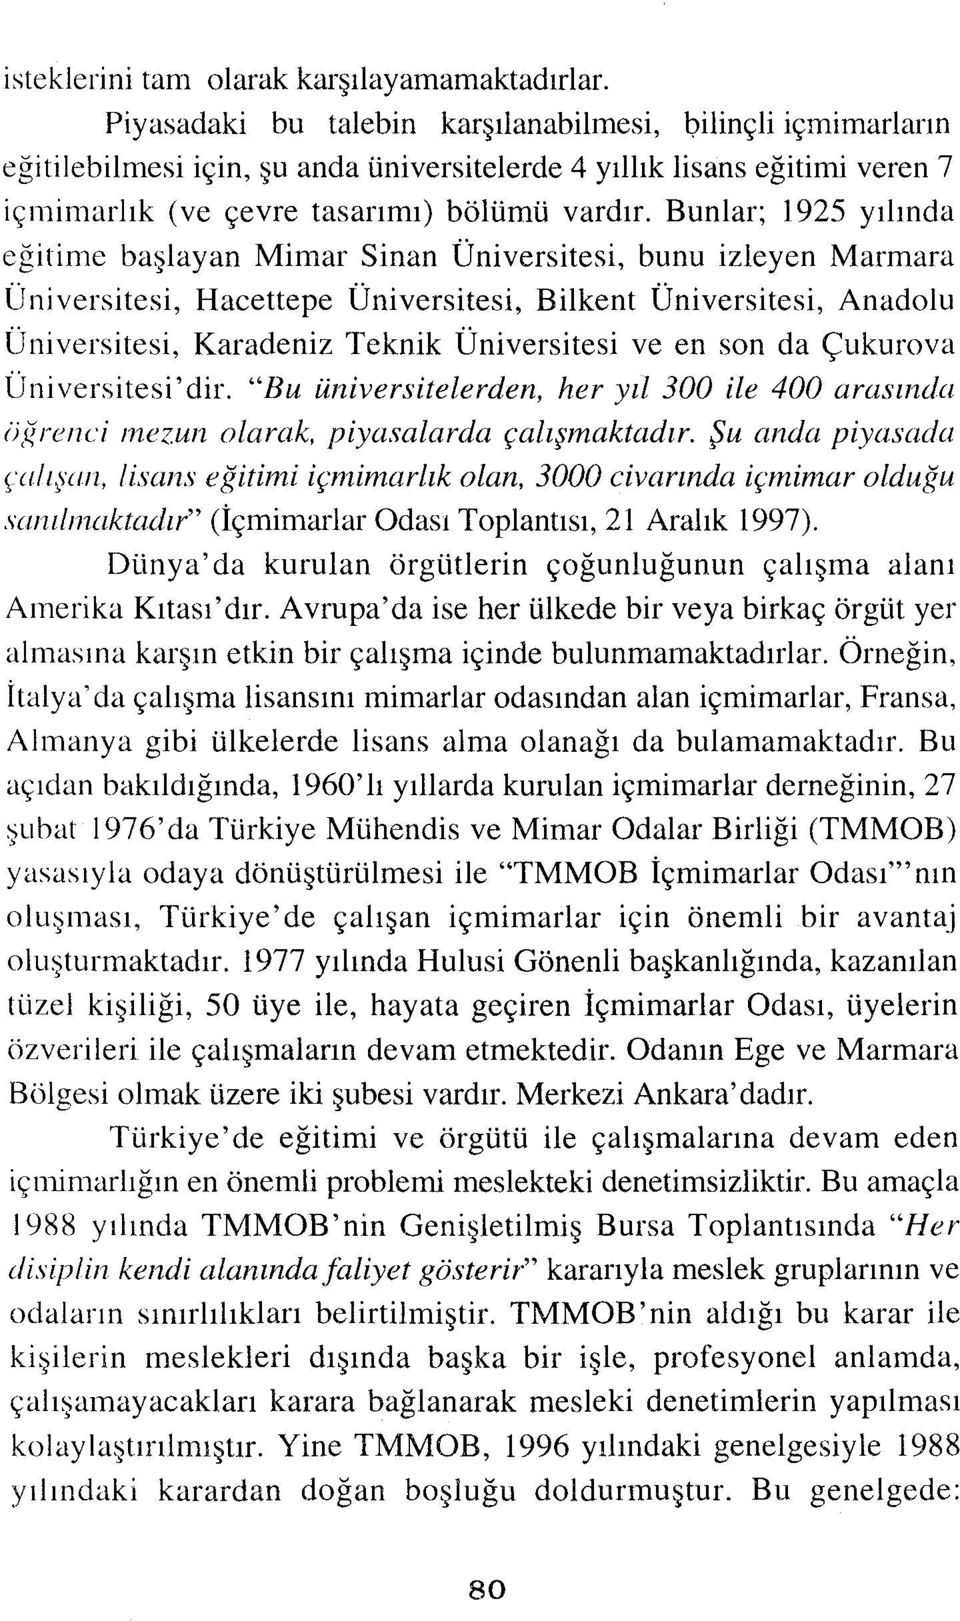 Bunlar; 1925 yılında eğitime başlayan Mimar Sinan Üniversitesi, bunu izleyen Marmara Üni versitesi, Hacettepe Üniversitesi, Bilkent Üniversitesi, Anadolu Ü niversitesi, Karadeniz Teknik Üniversitesi